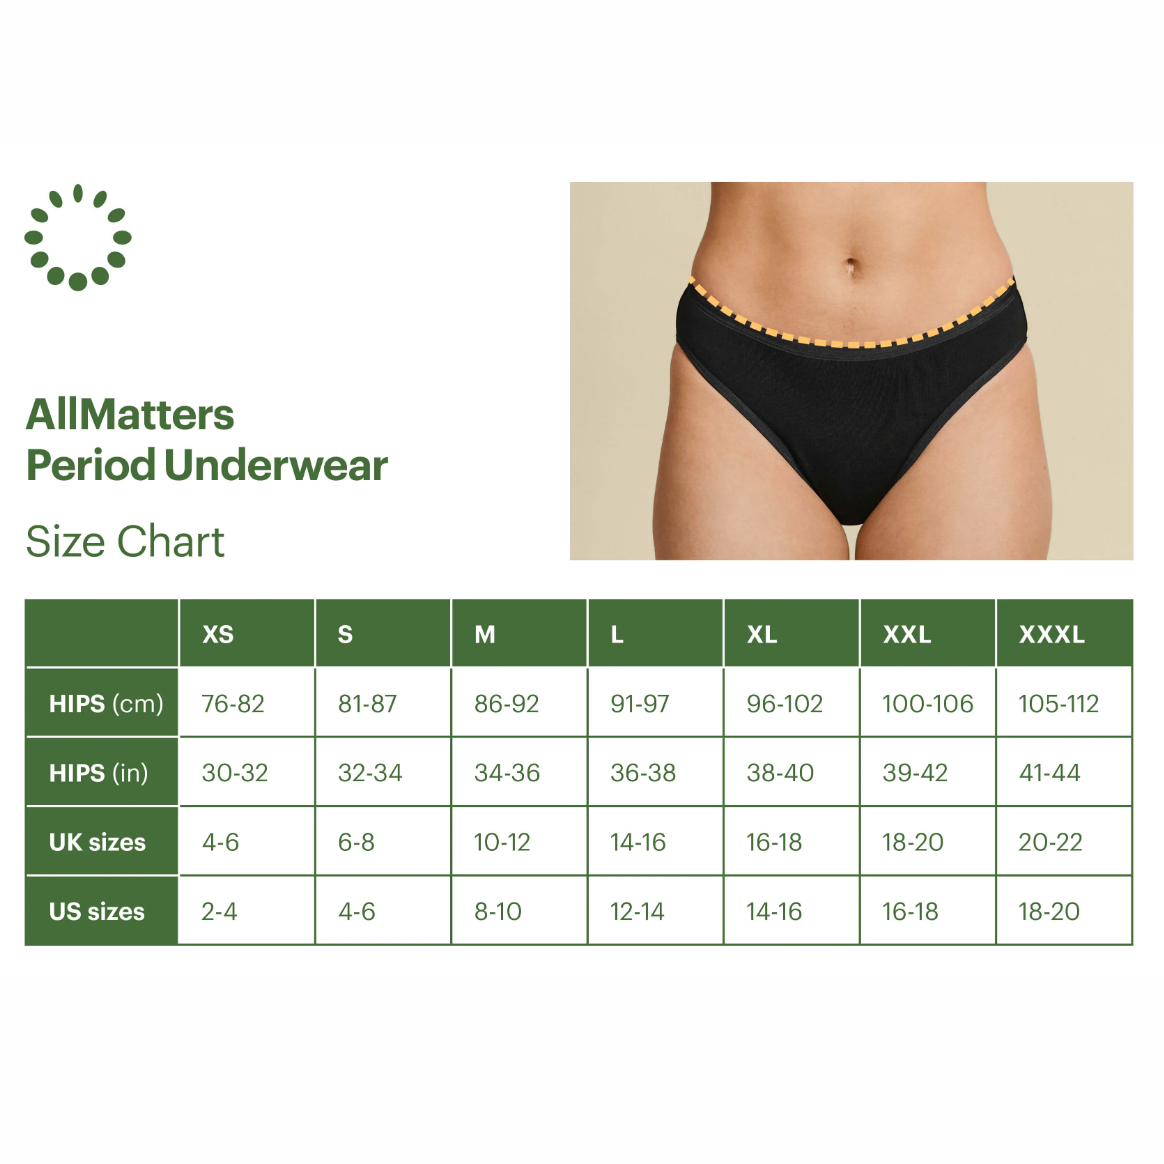 AllMatters Period Underwear